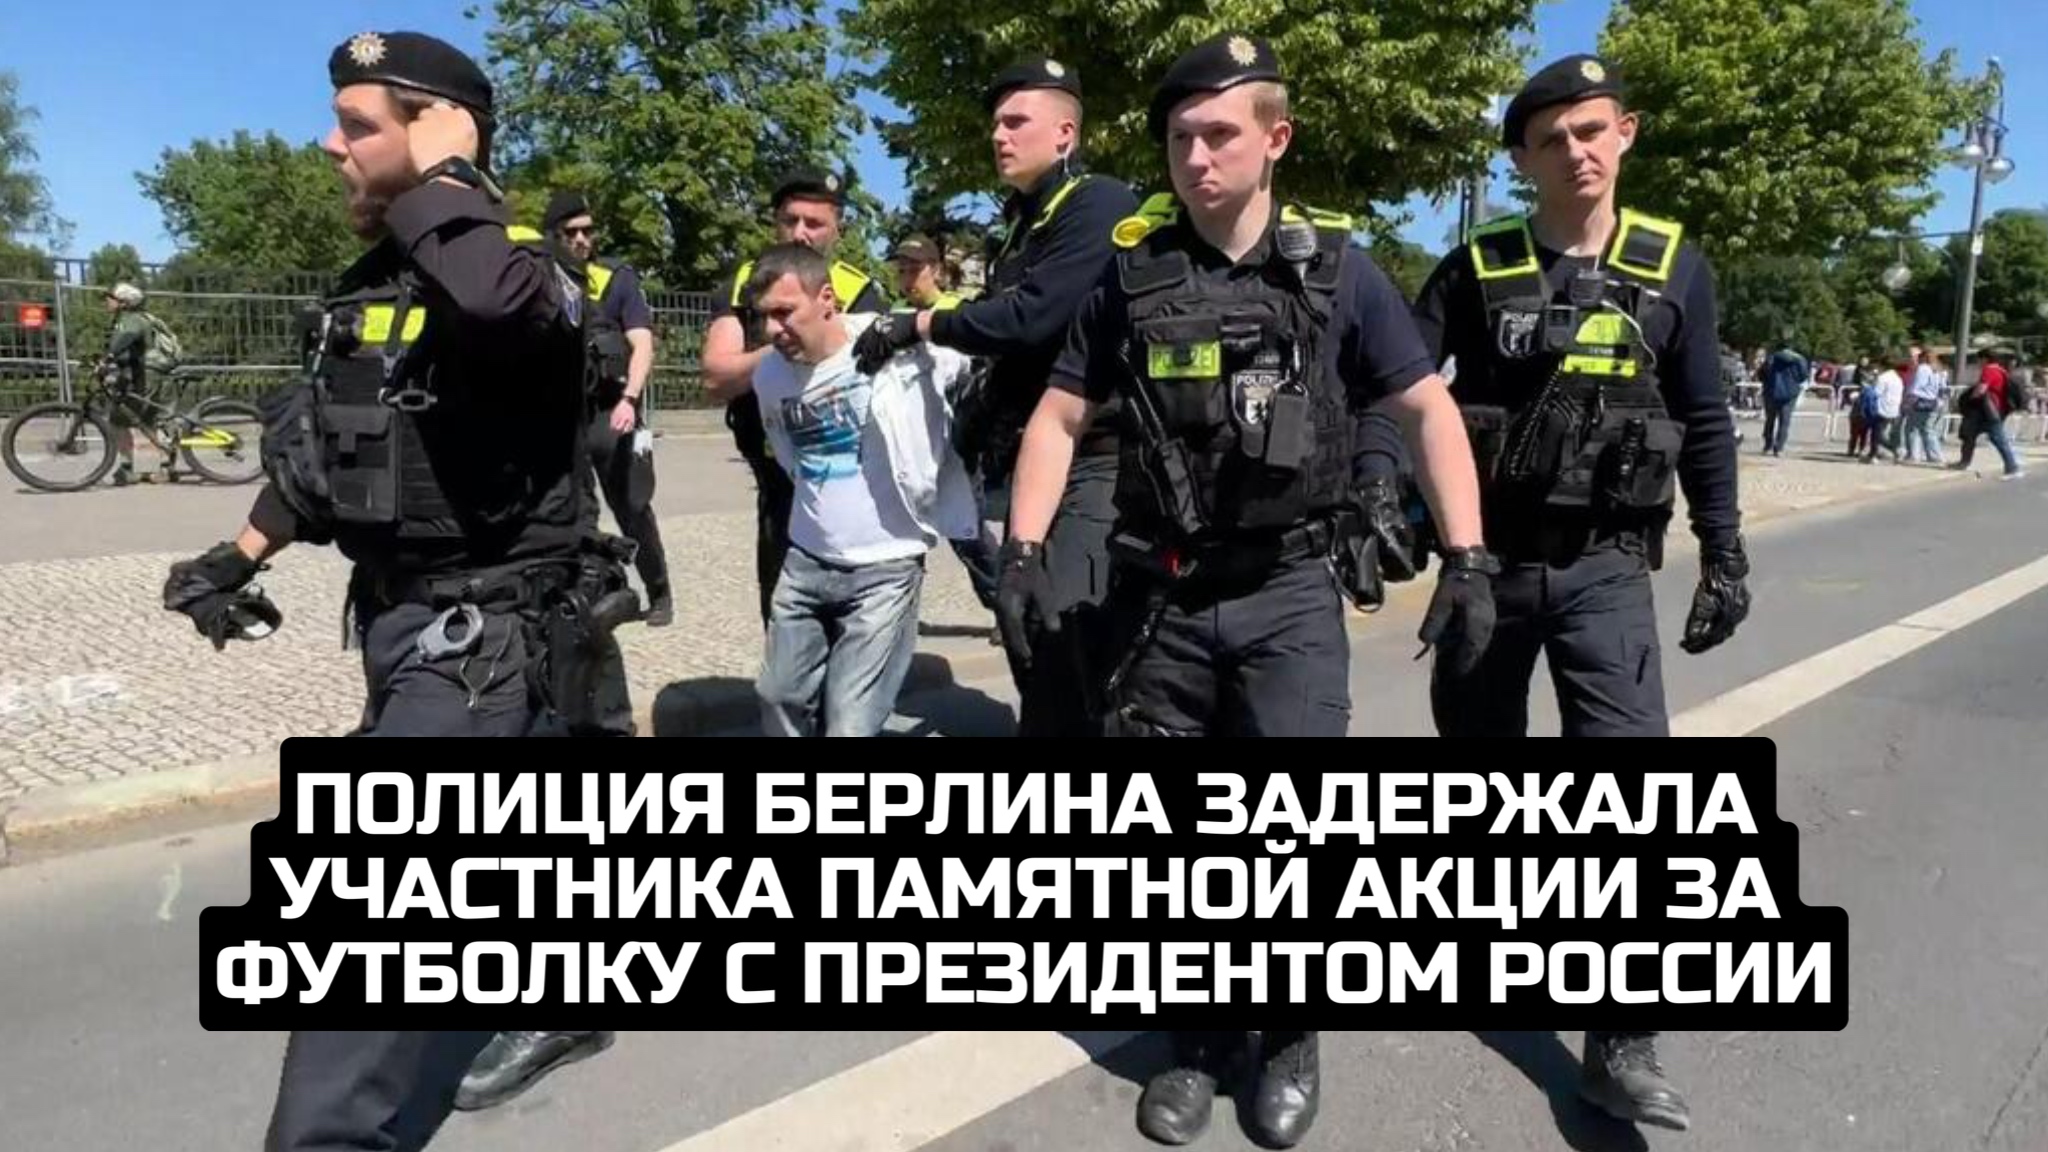 Полиция Берлина задержала участника памятной акции за футболку с президентом России